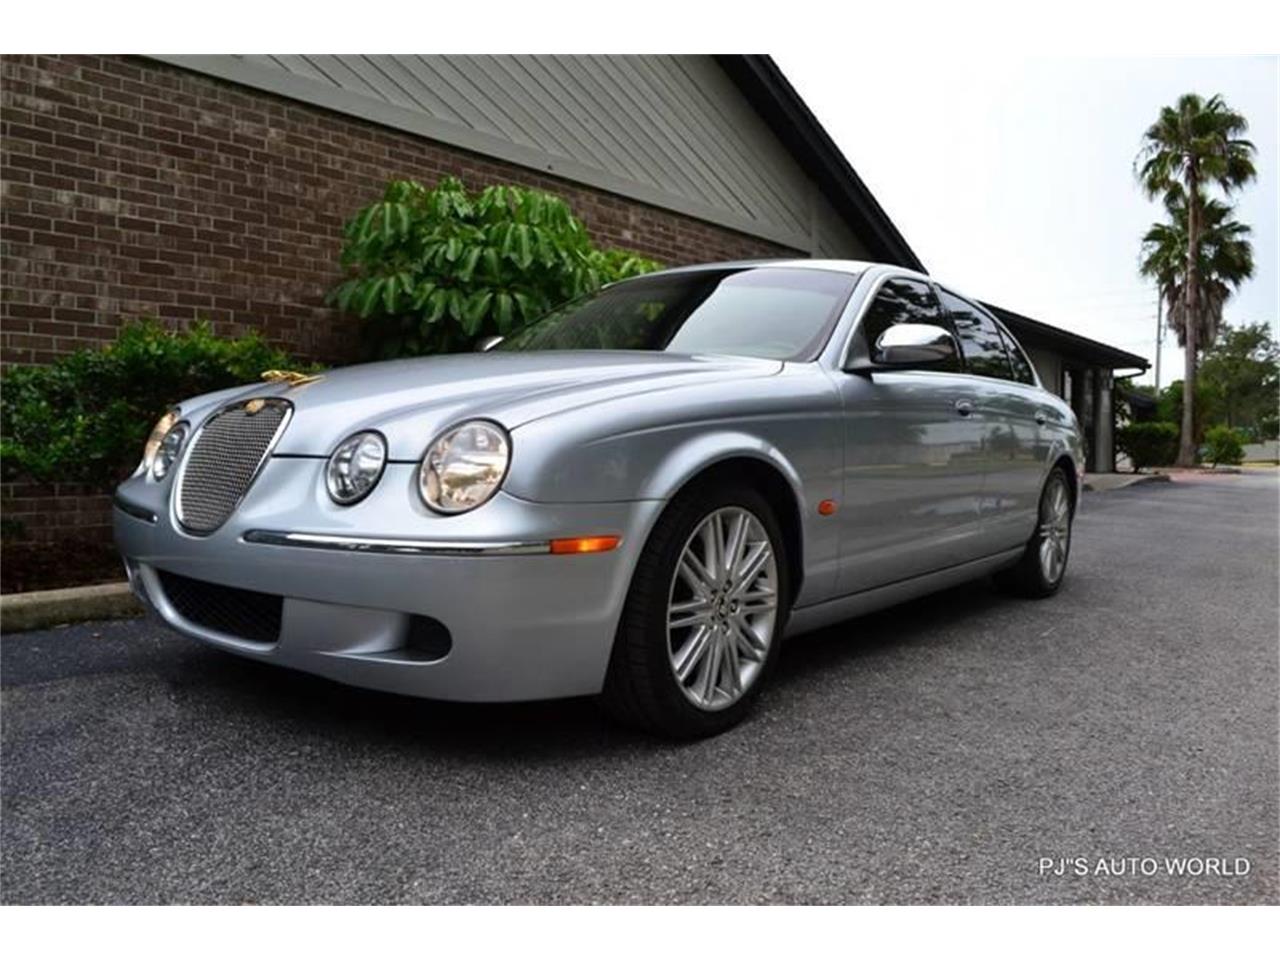 2008 Jaguar S-Type for Sale | ClassicCars.com | CC-1130749